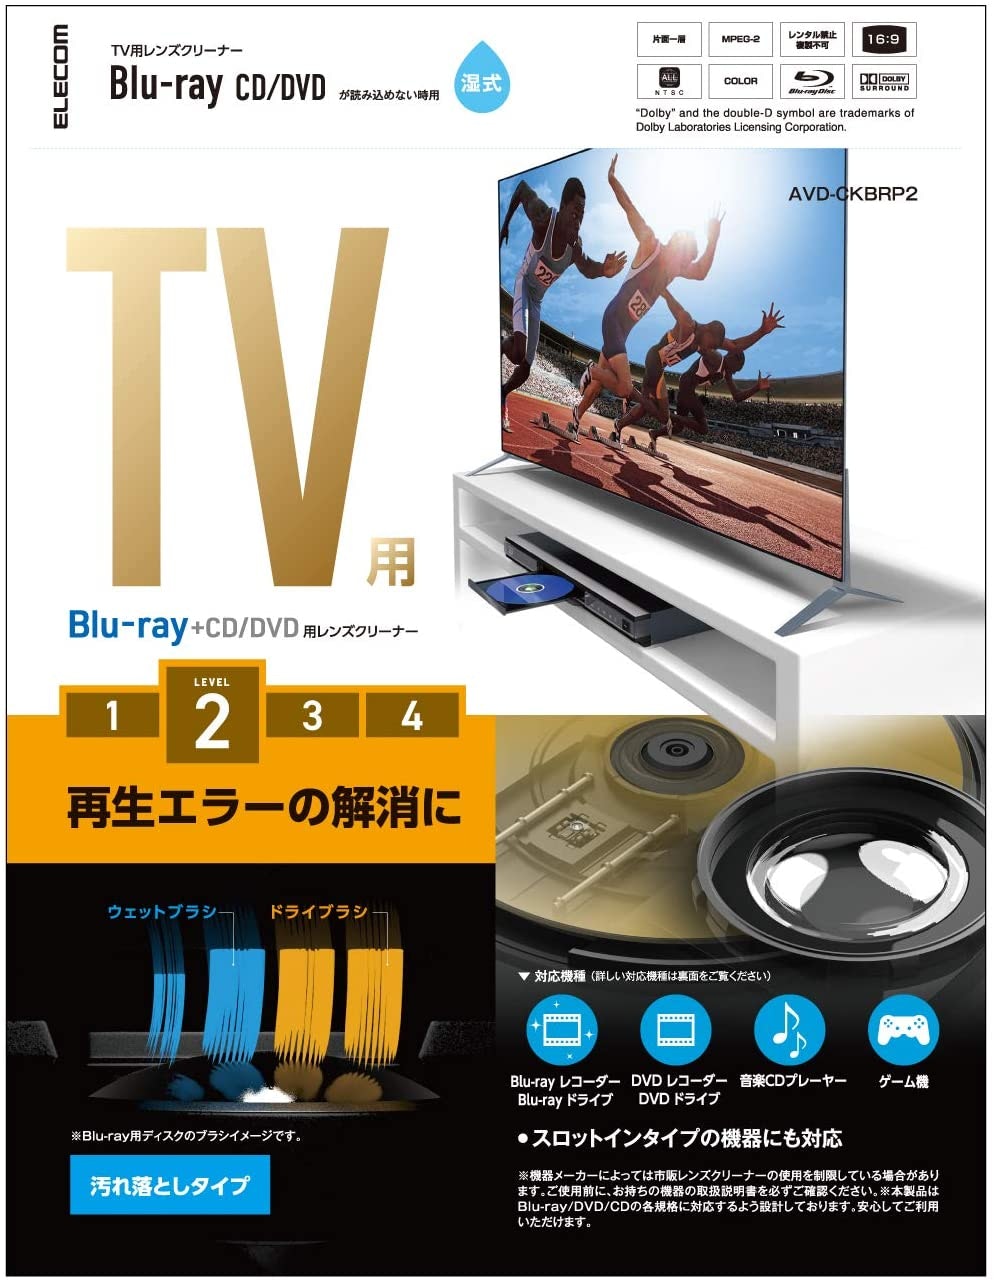 CD DVDクリーナー ブルーレイディスク・CD・DVD対応 クリーニングパッド 洗える CD-R54KTN サンワサプライ